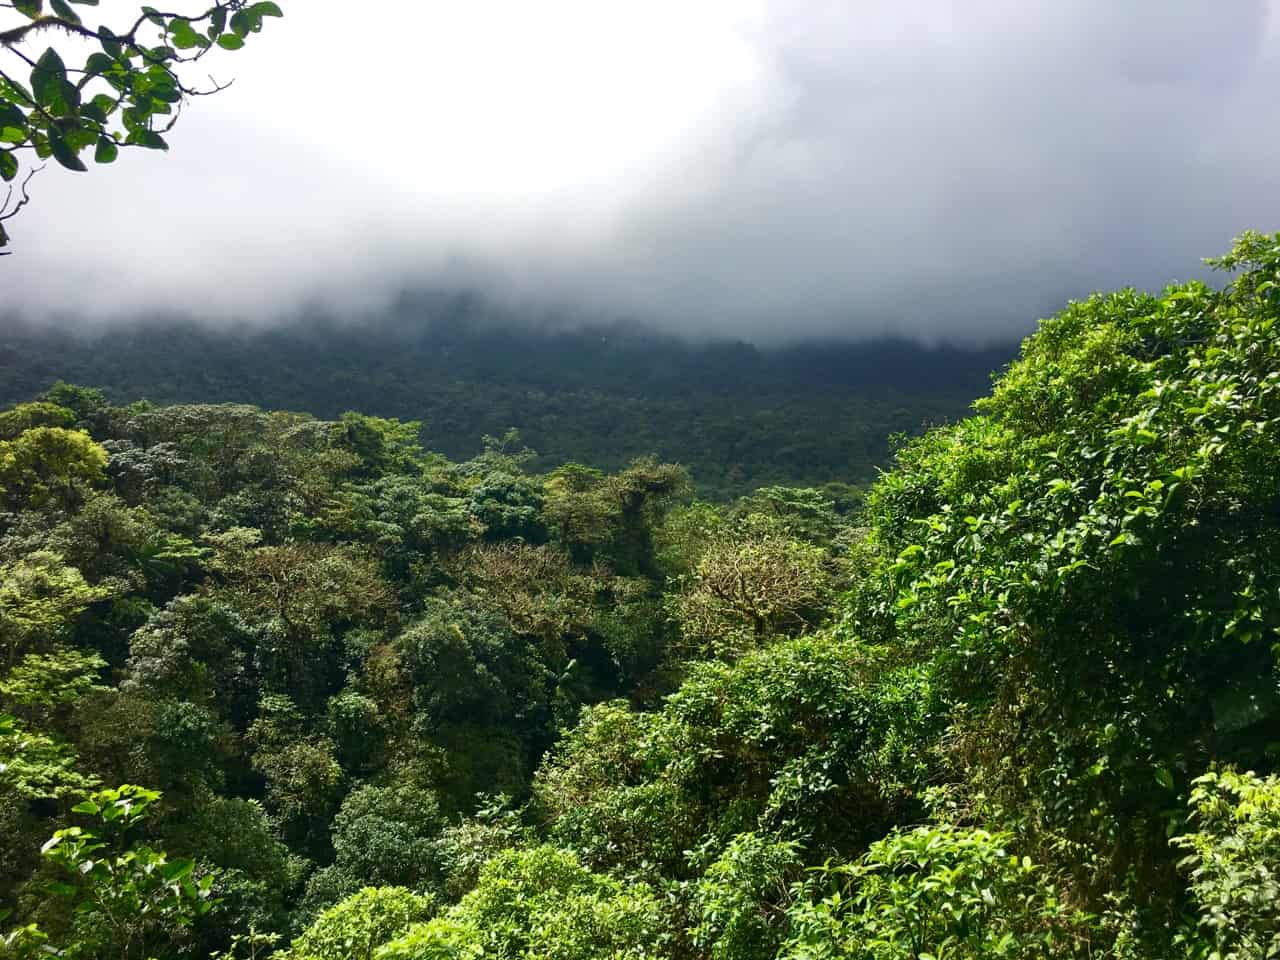 chmury pokrywają las i zaciemniają Widok na wulkan Tenorio w Kostaryce.